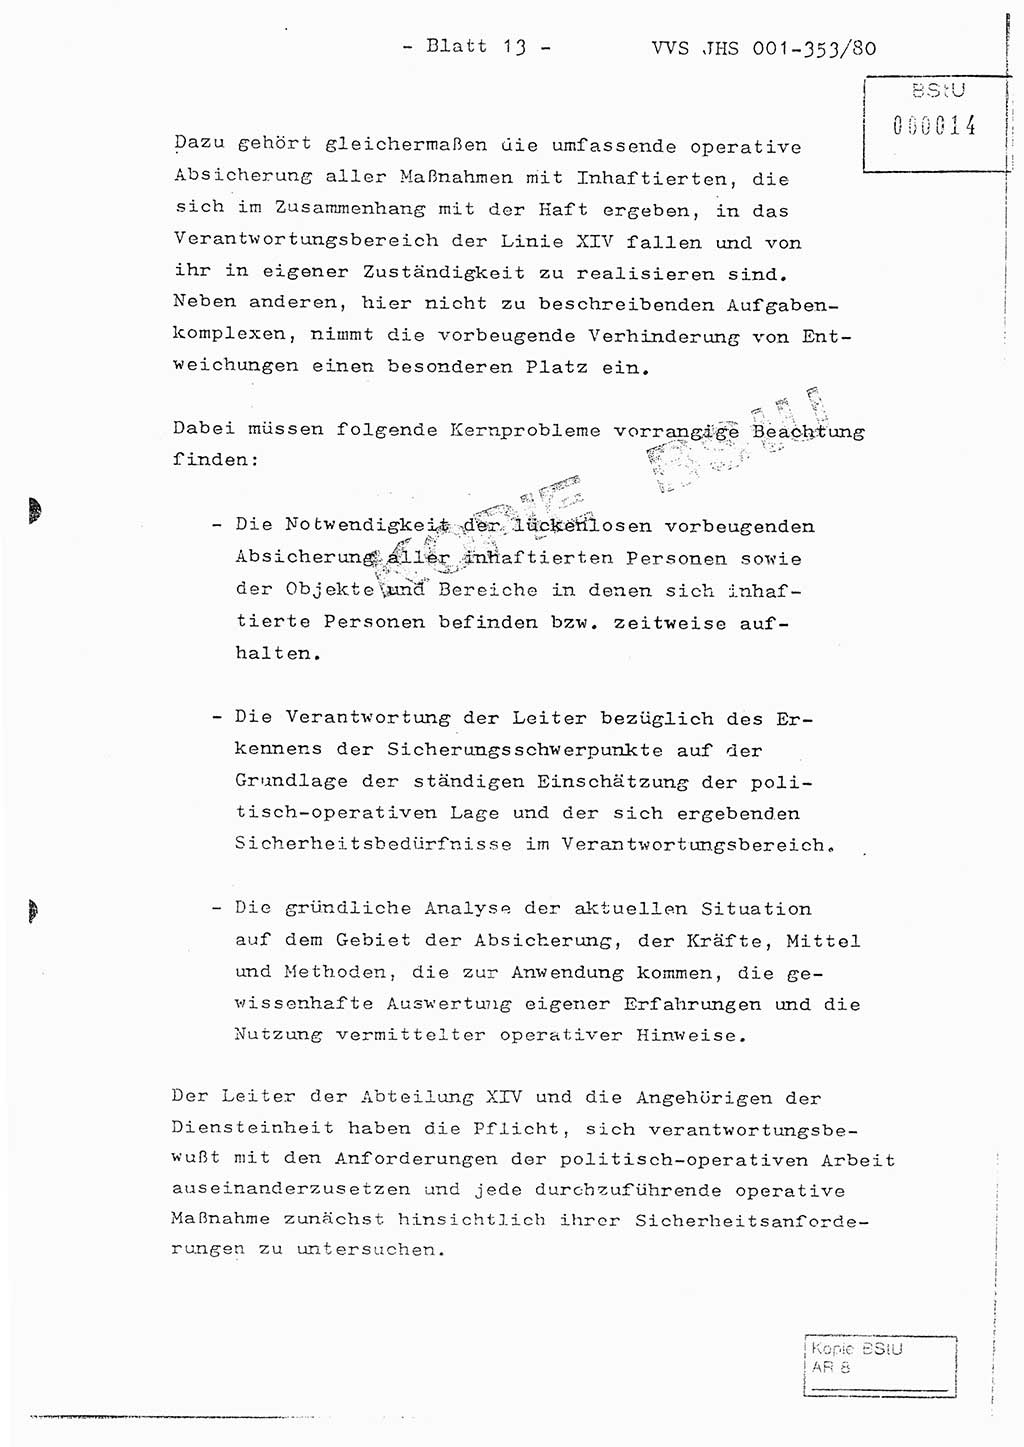 Diplomarbeit Hauptmann Joachim Klaumünzner (Abt. ⅩⅣ), Ministerium für Staatssicherheit (MfS) [Deutsche Demokratische Republik (DDR)], Juristische Hochschule (JHS), Vertrauliche Verschlußsache (VVS) o001-353/80, Potsdam 1980, Blatt 13 (Dipl.-Arb. MfS DDR JHS VVS o001-353/80 1980, Bl. 13)